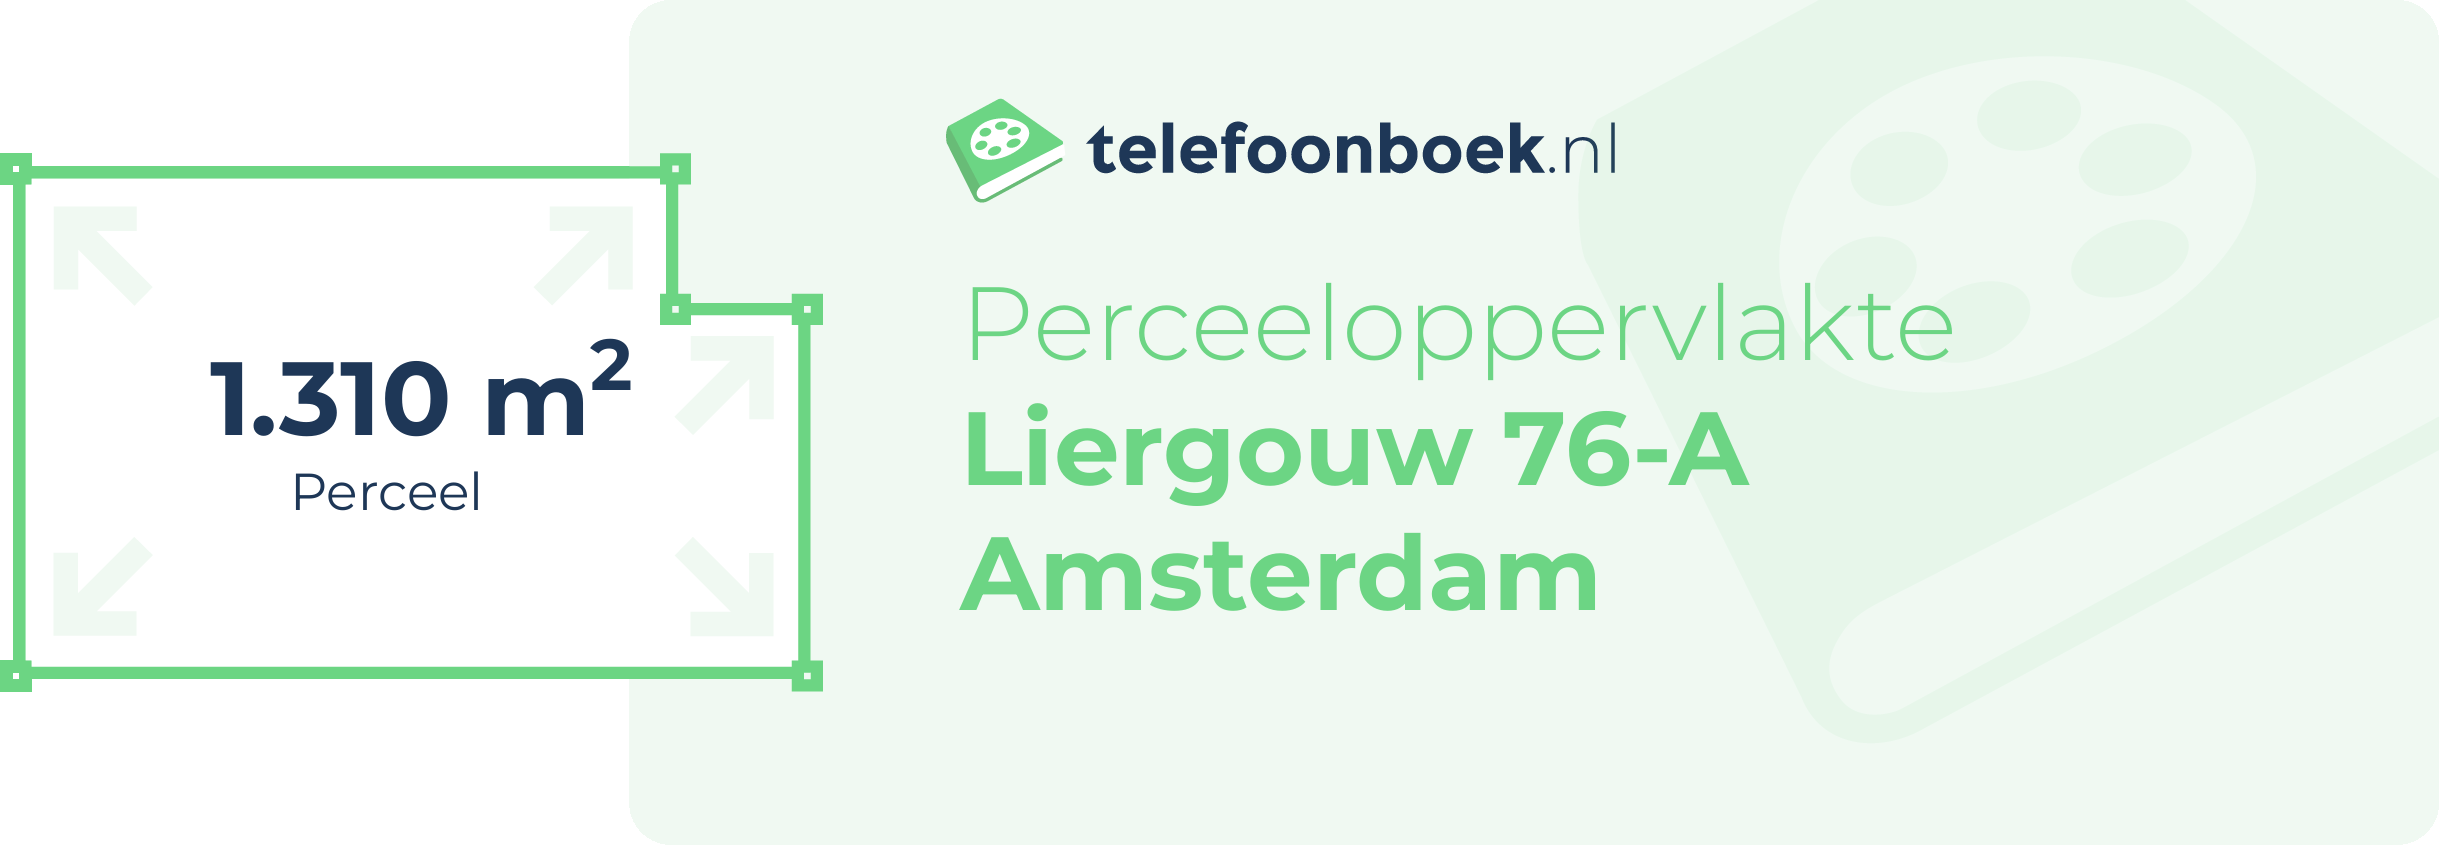 Perceeloppervlakte Liergouw 76-A Amsterdam